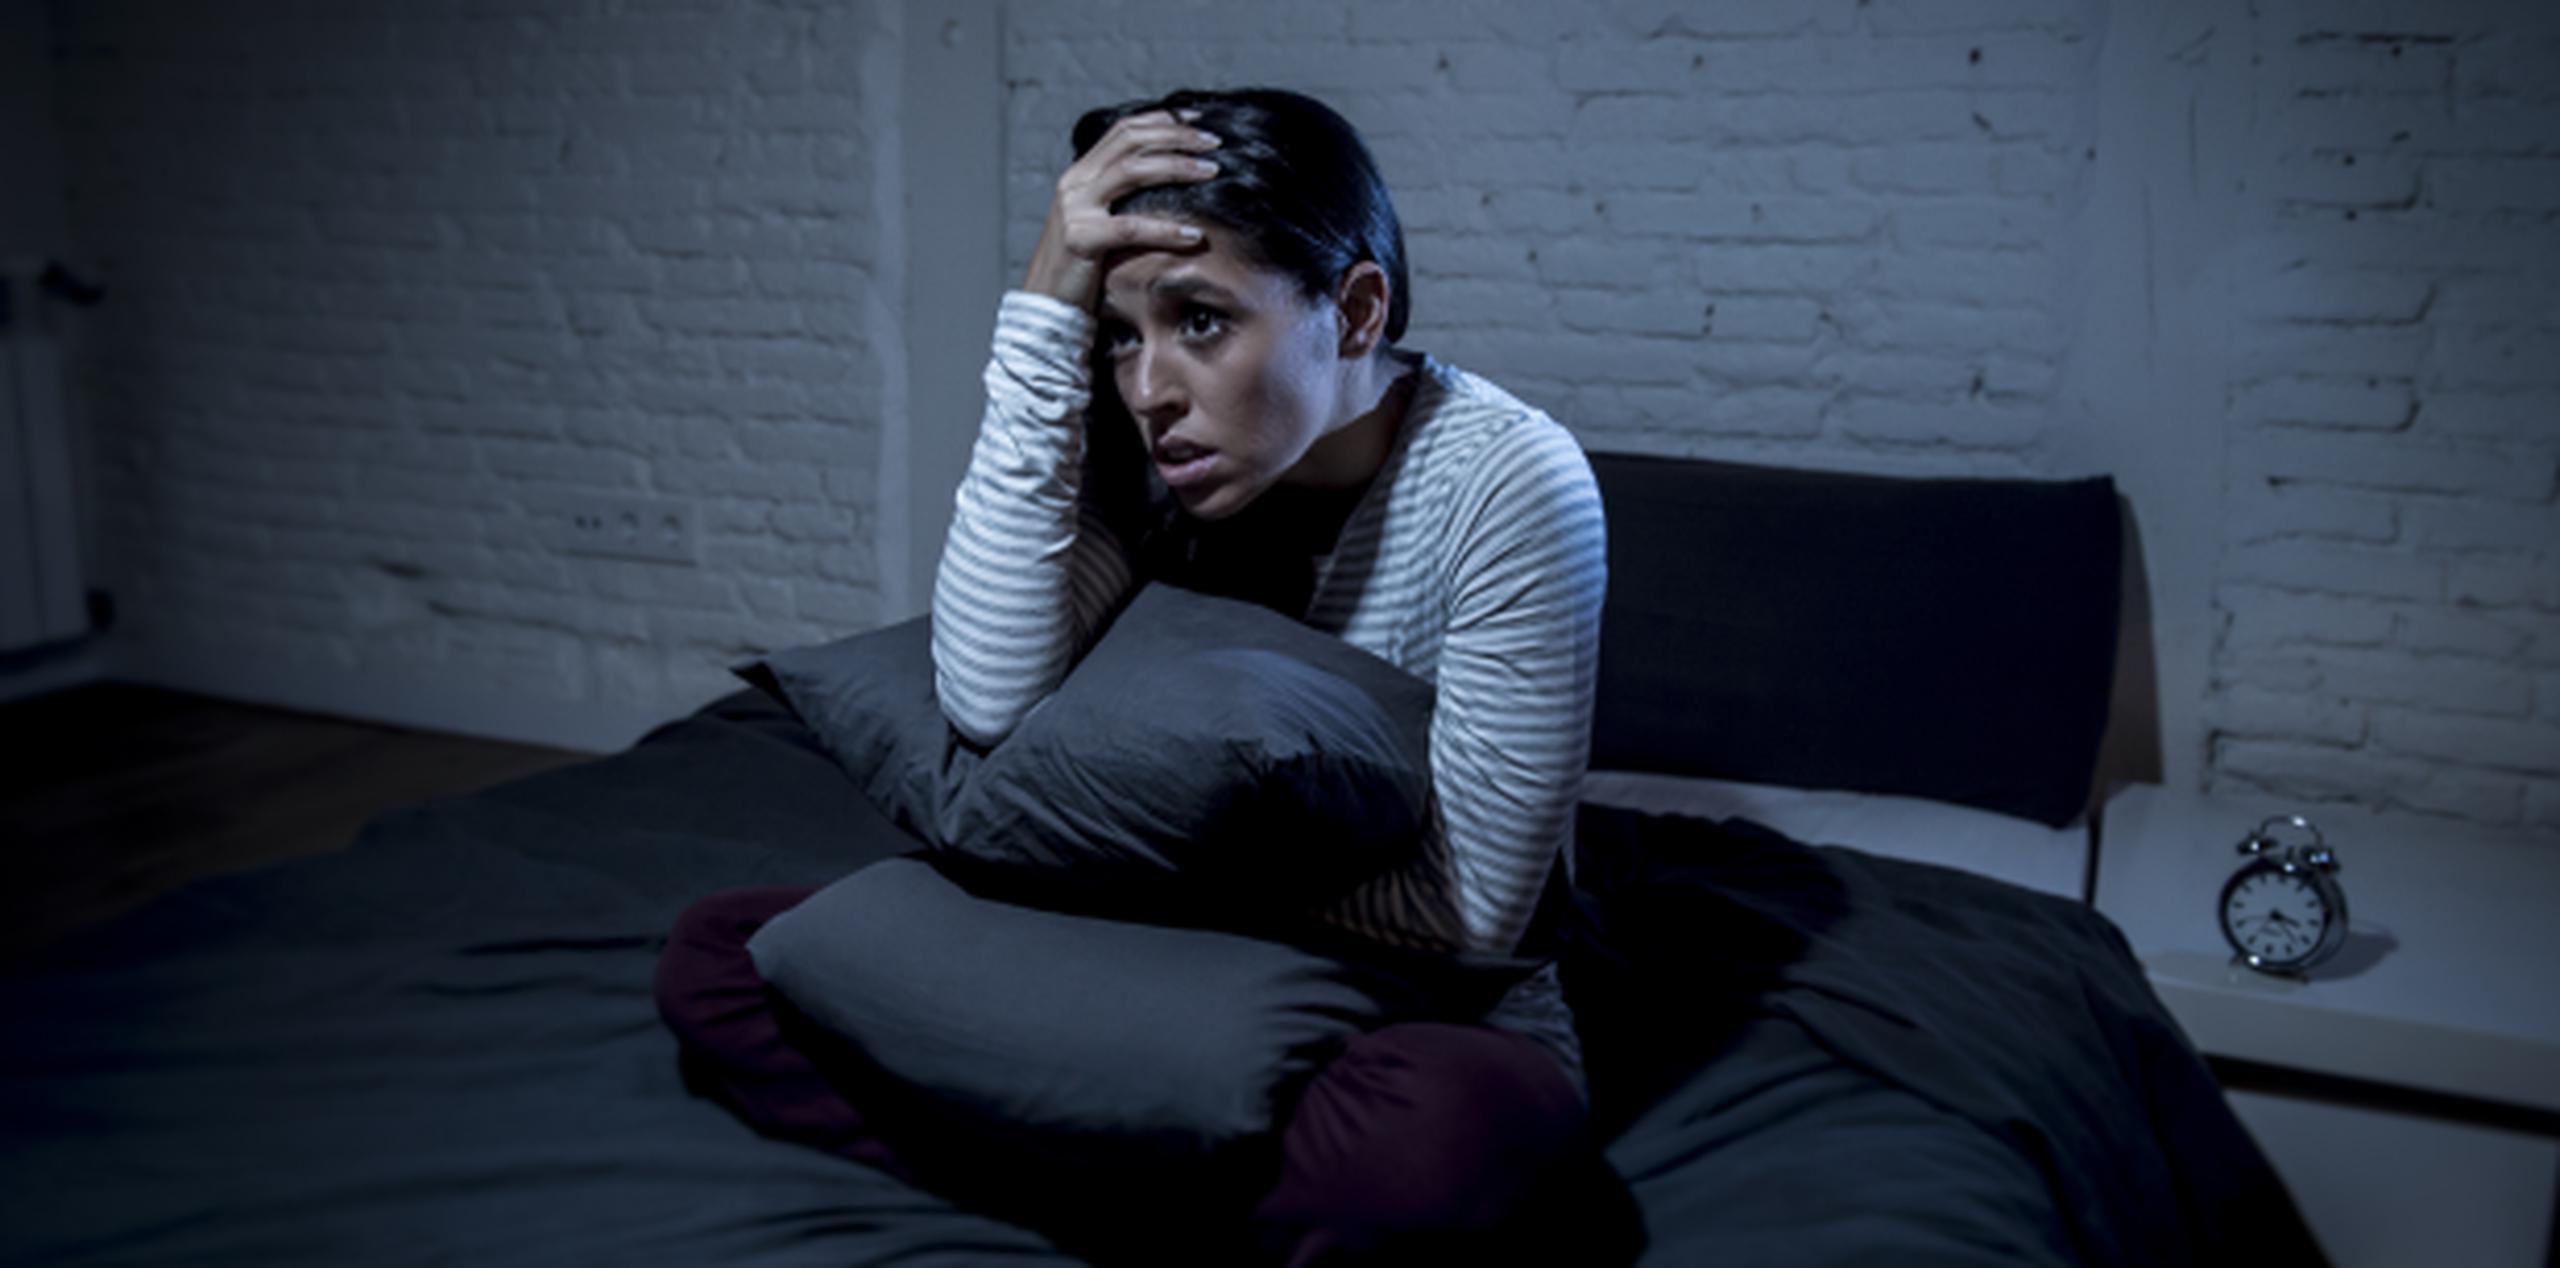 En el estudio, aquellos que reportaron mayor cantidad de horas de insomnio y pesadillas mostraron tendencias suicidas más altas. (Shutterstock)